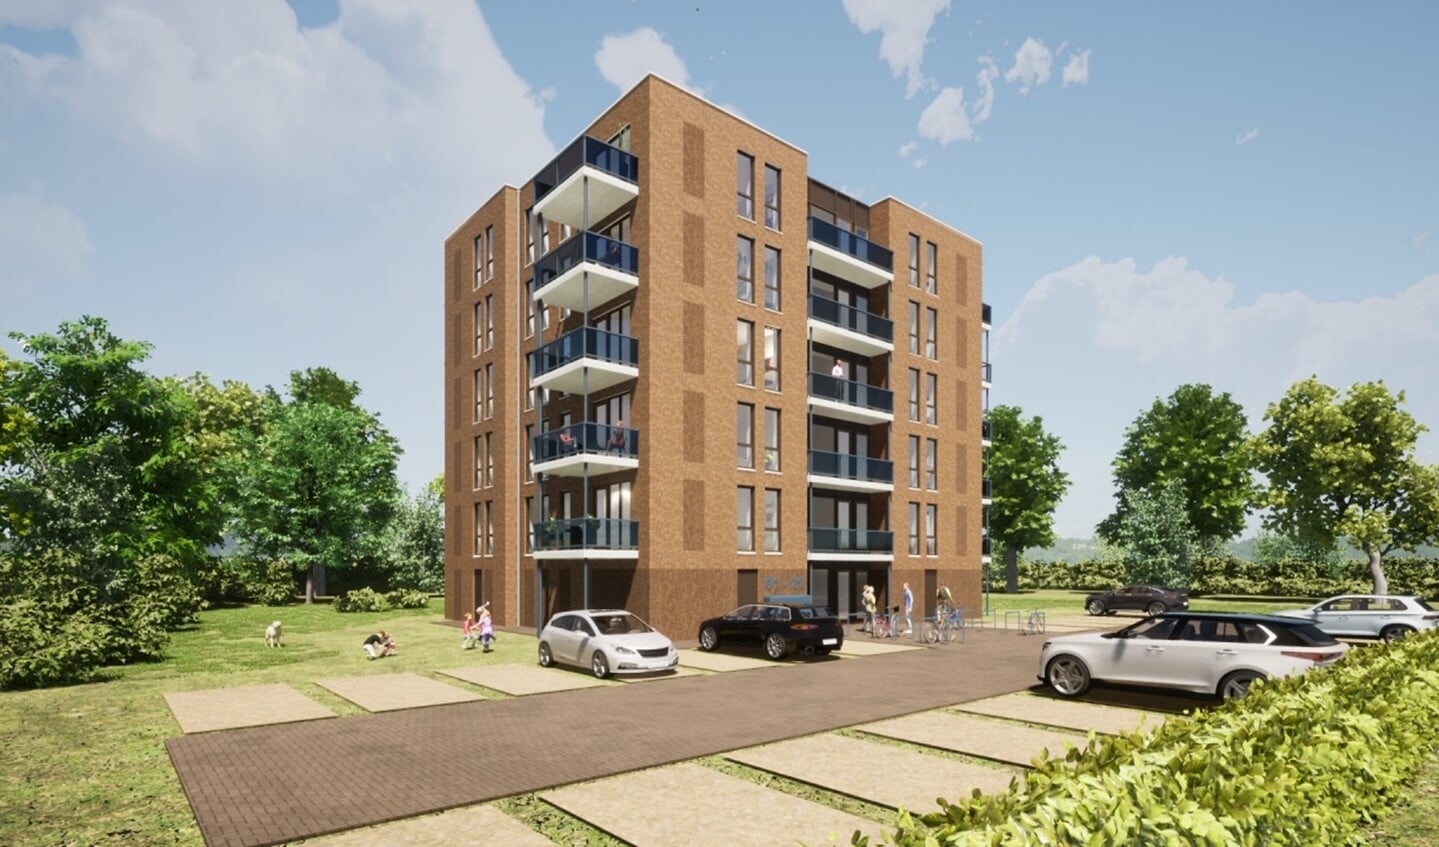 'We hebben een appartementencomplex ontwikkeld dat, met parkeerplaatsen erbij, past op een stukje grond van 1000 vierkante meter.'